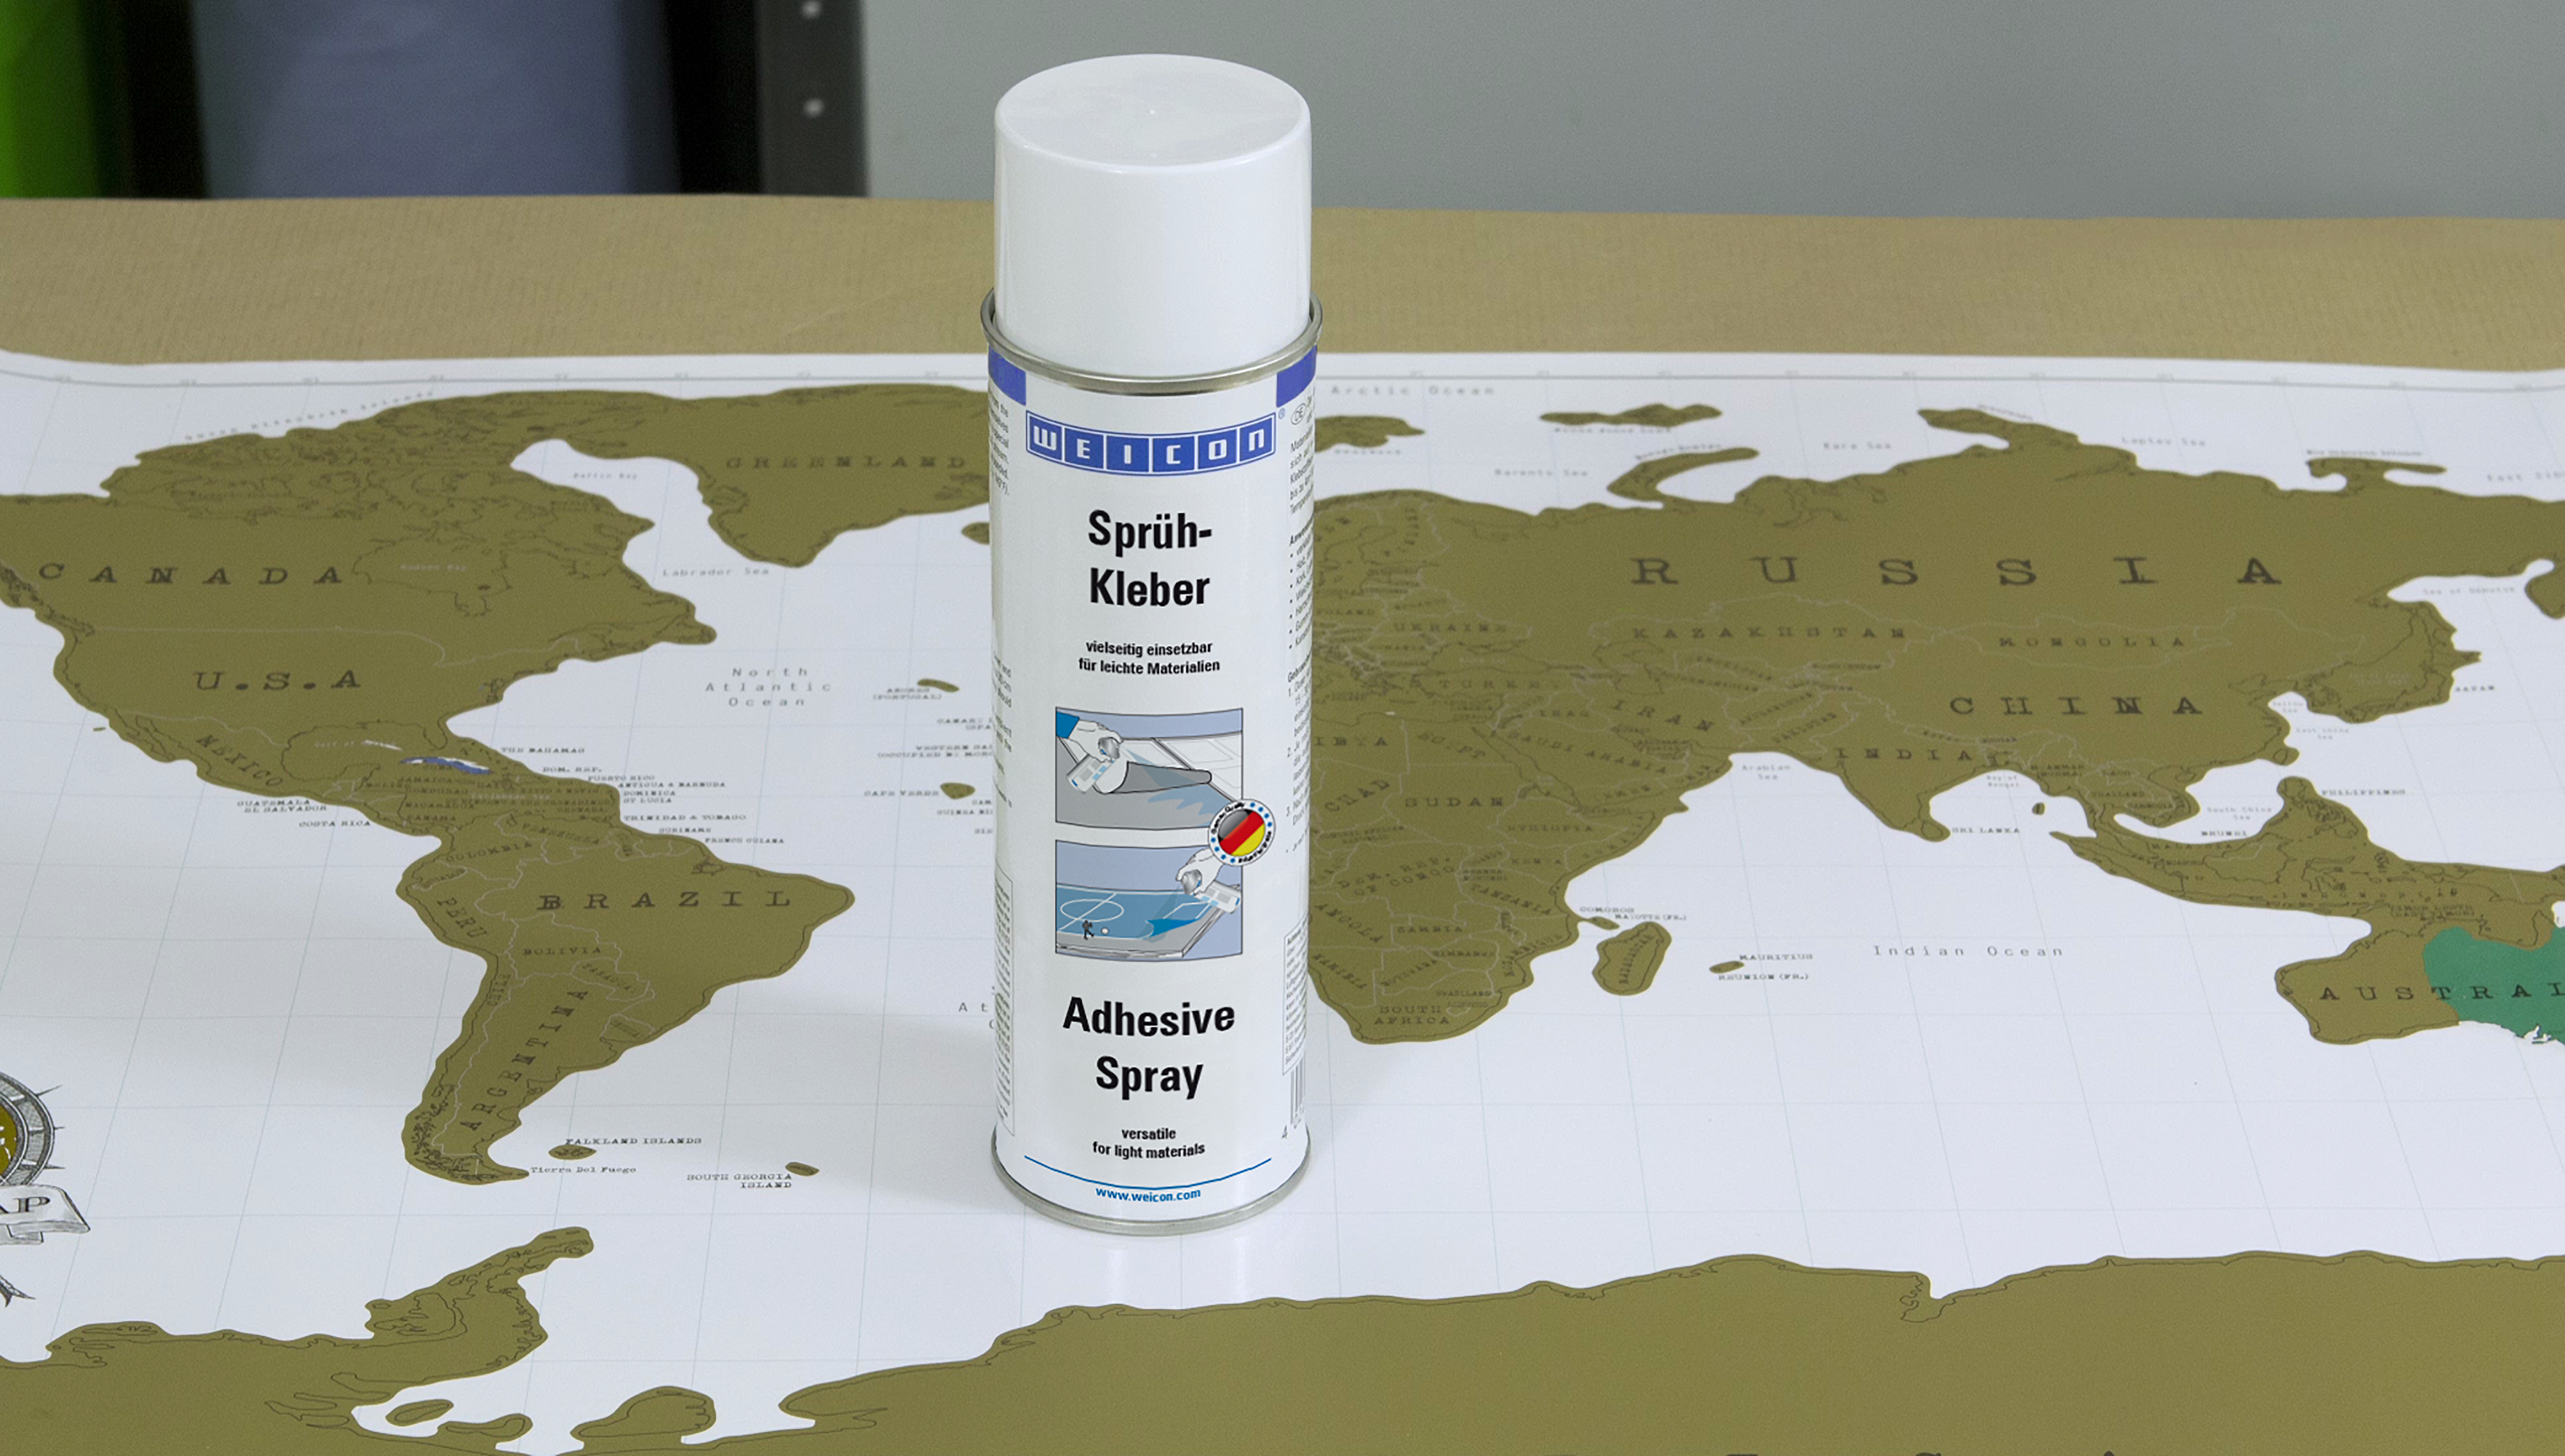 Adhesive Spray | Klej kontaktowy w sprayu, idealny do kartonu i papieru